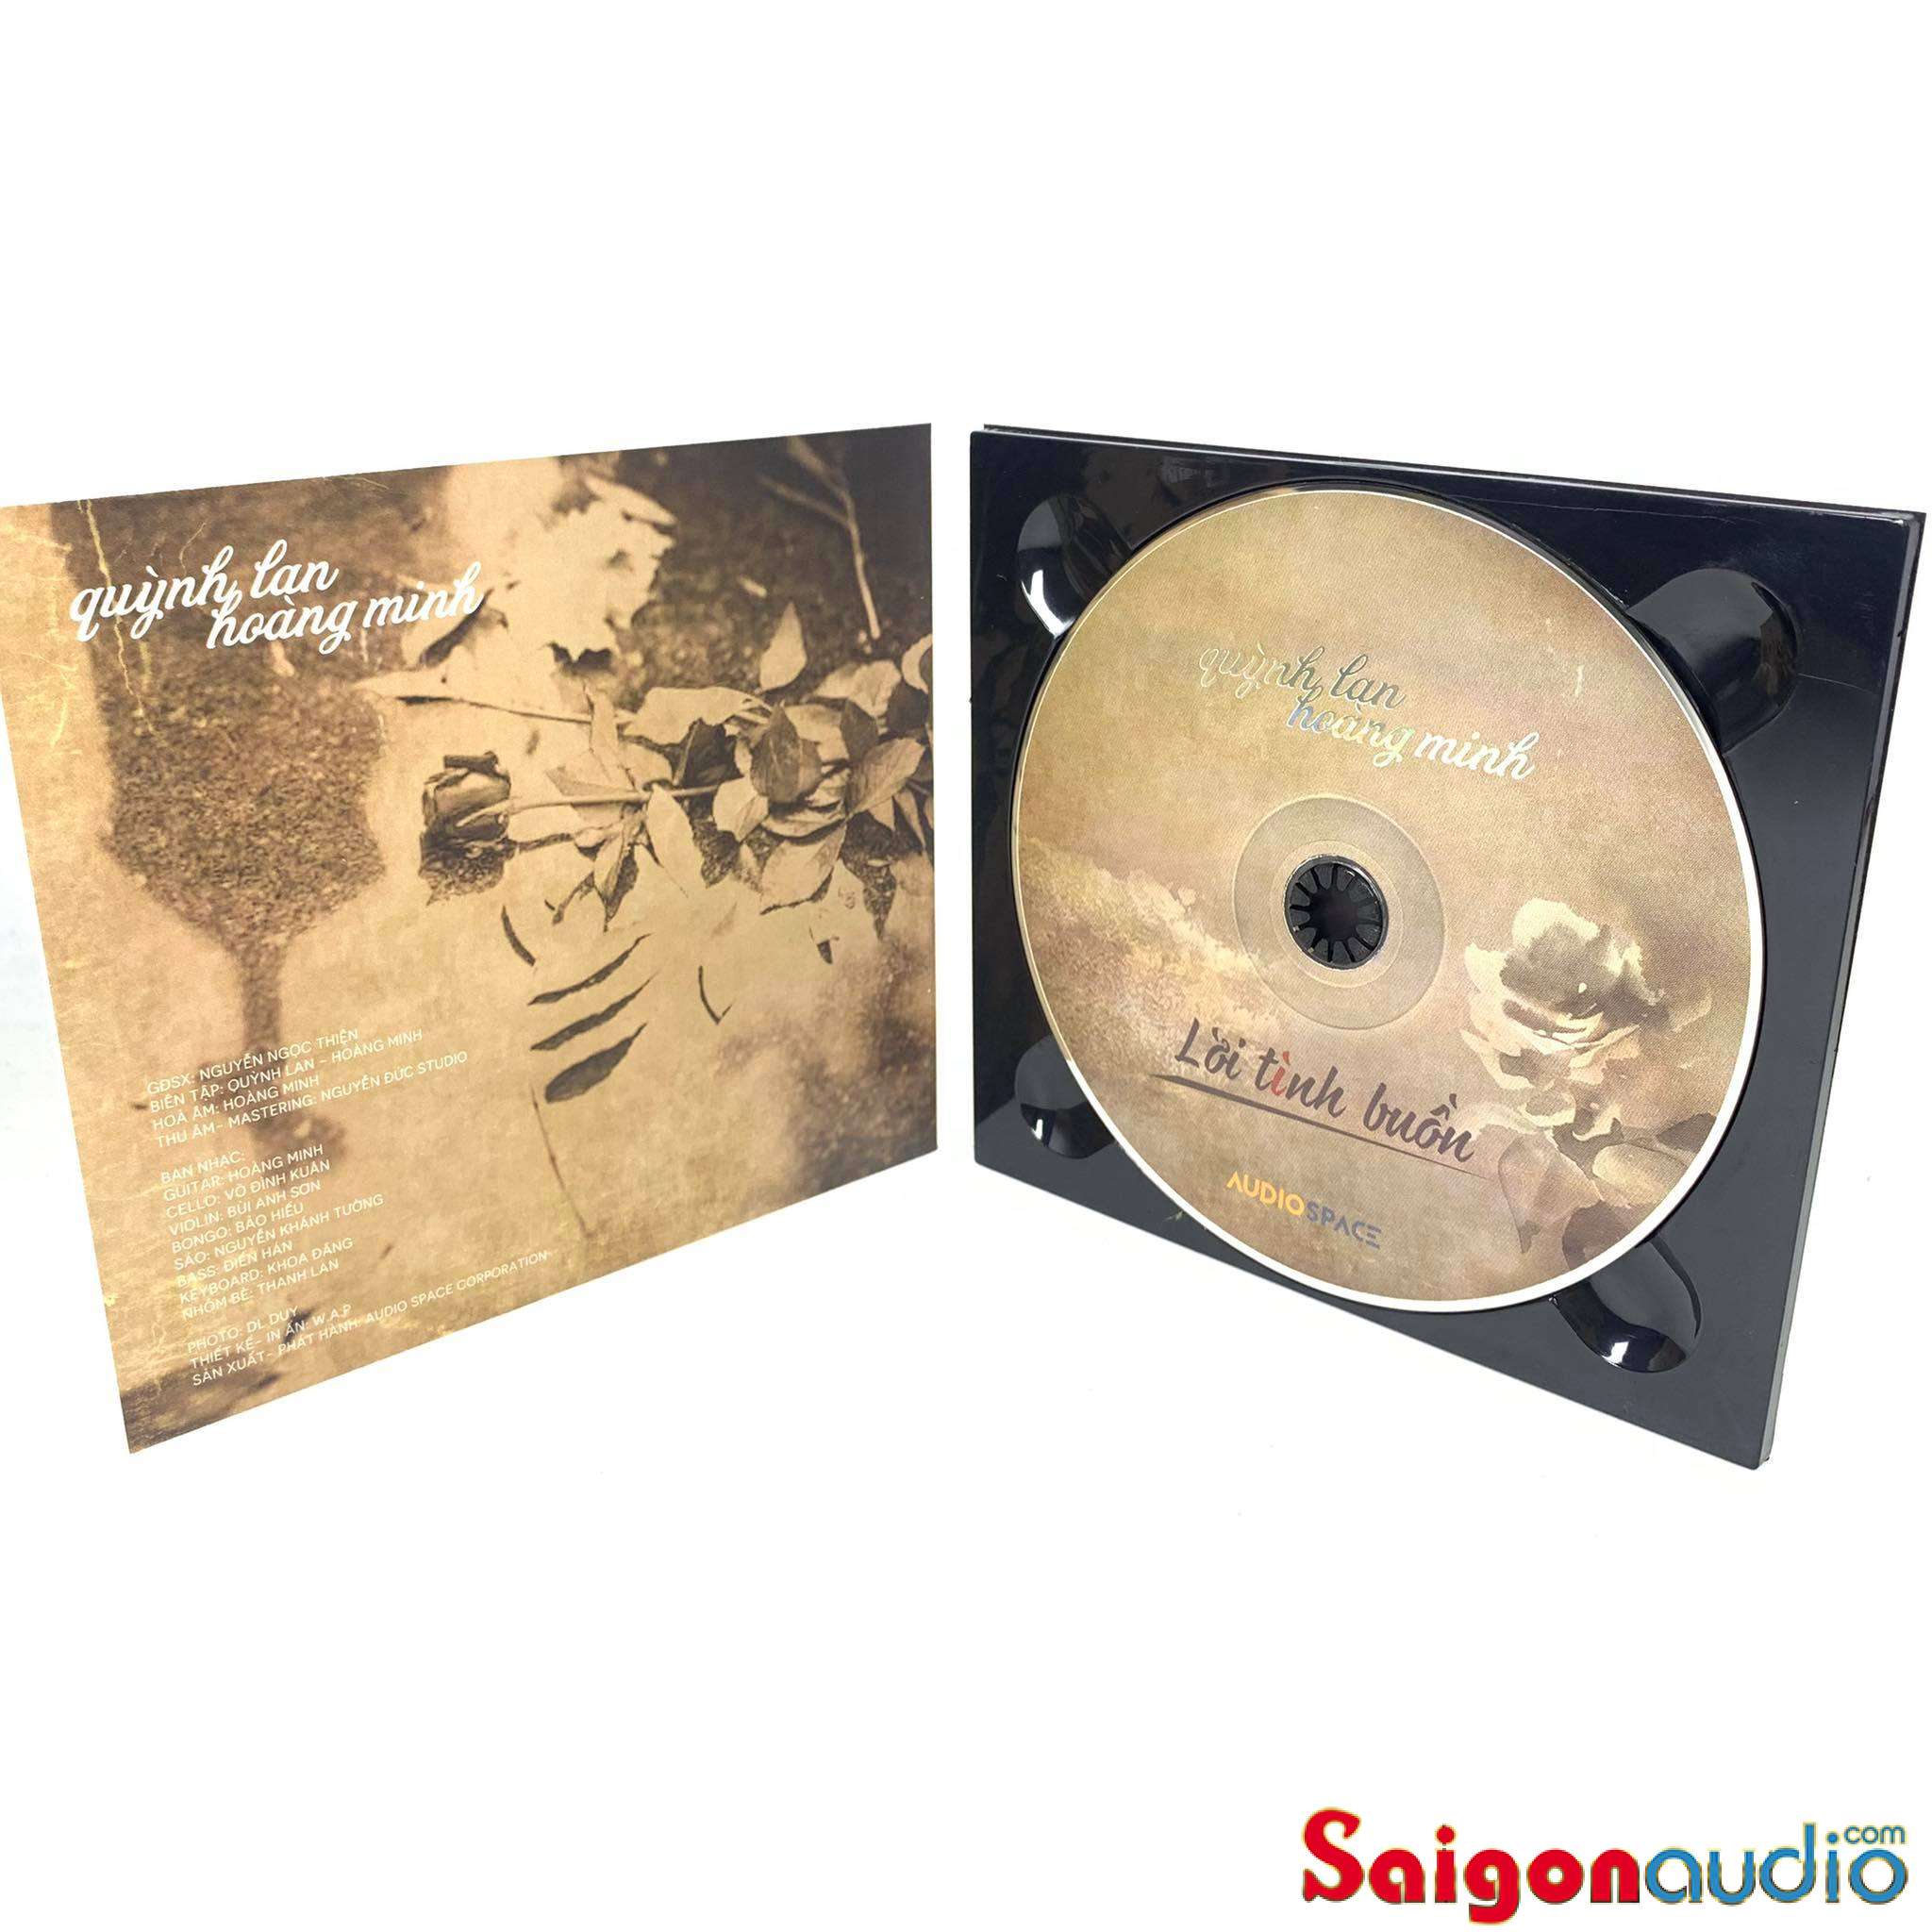 Đĩa CD gốc Lời Tình Buồn - Quỳnh Lan - Hoàng Minh Guitar (Free ship khi mua 2 đĩa CD cùng hoặc khác loại)